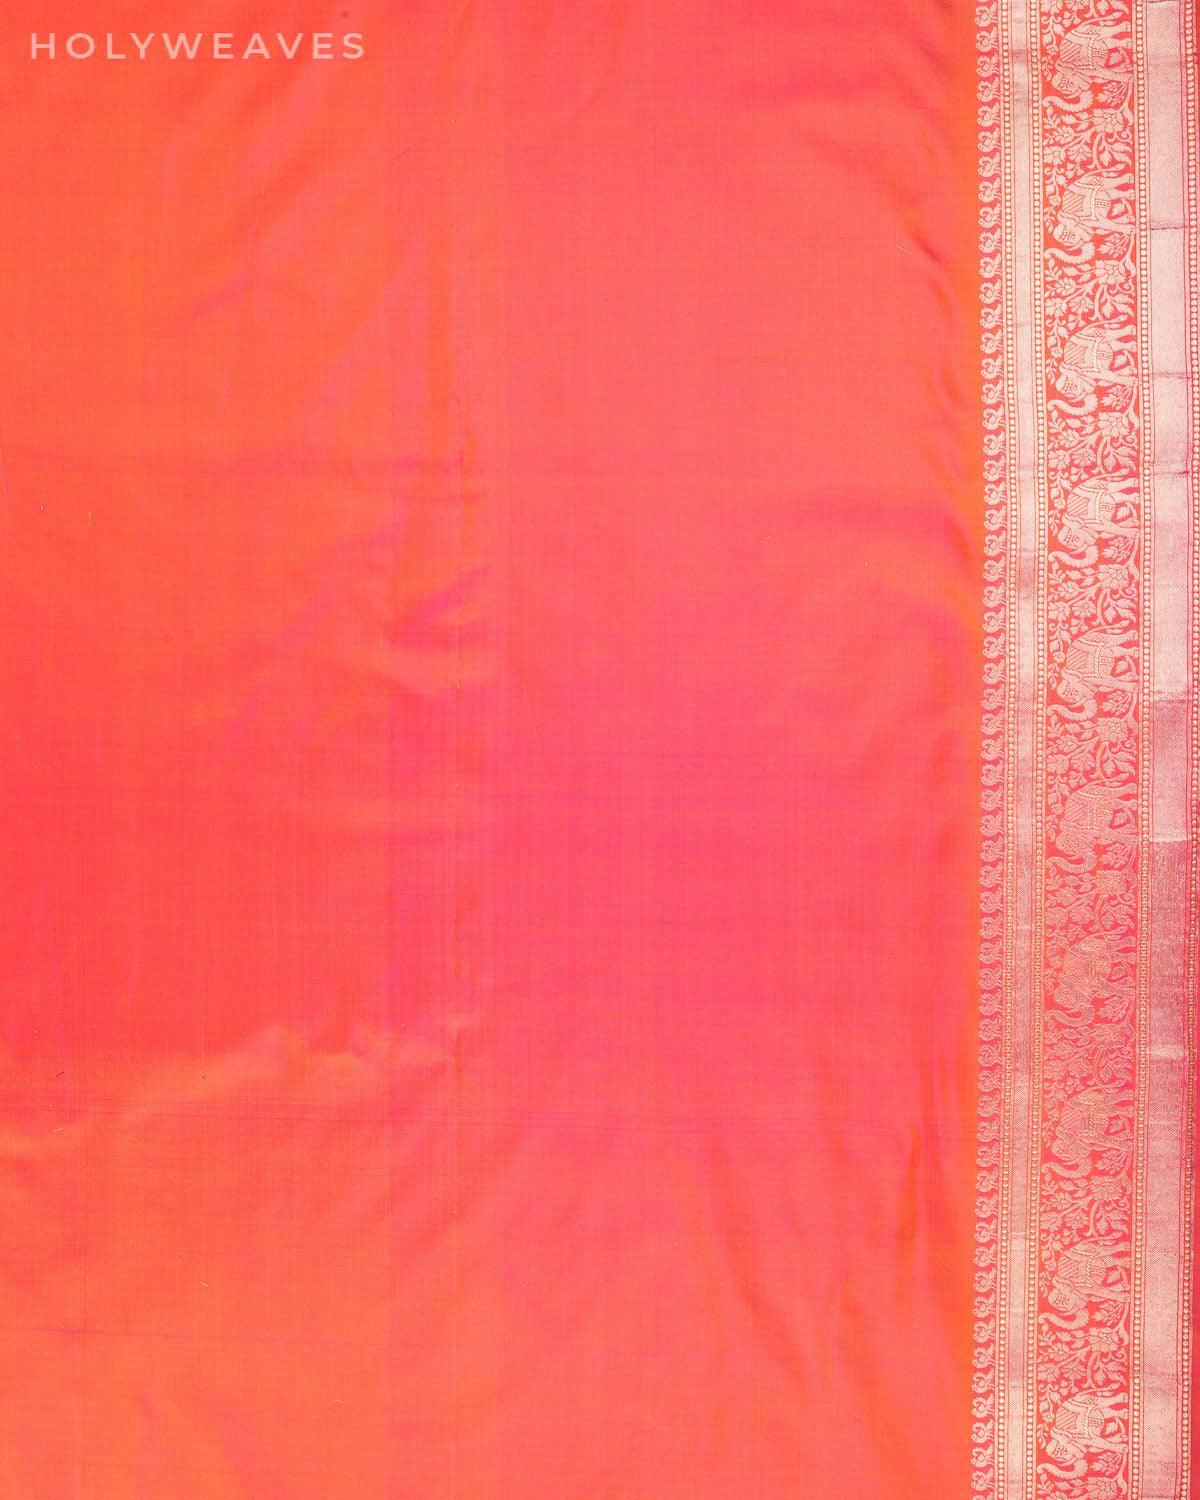 Shot Pink-Orange Banarasi Shikargah Cutwork Brocade Handwoven Katan Silk Saree with Elephant Trail Border - By HolyWeaves, Benares